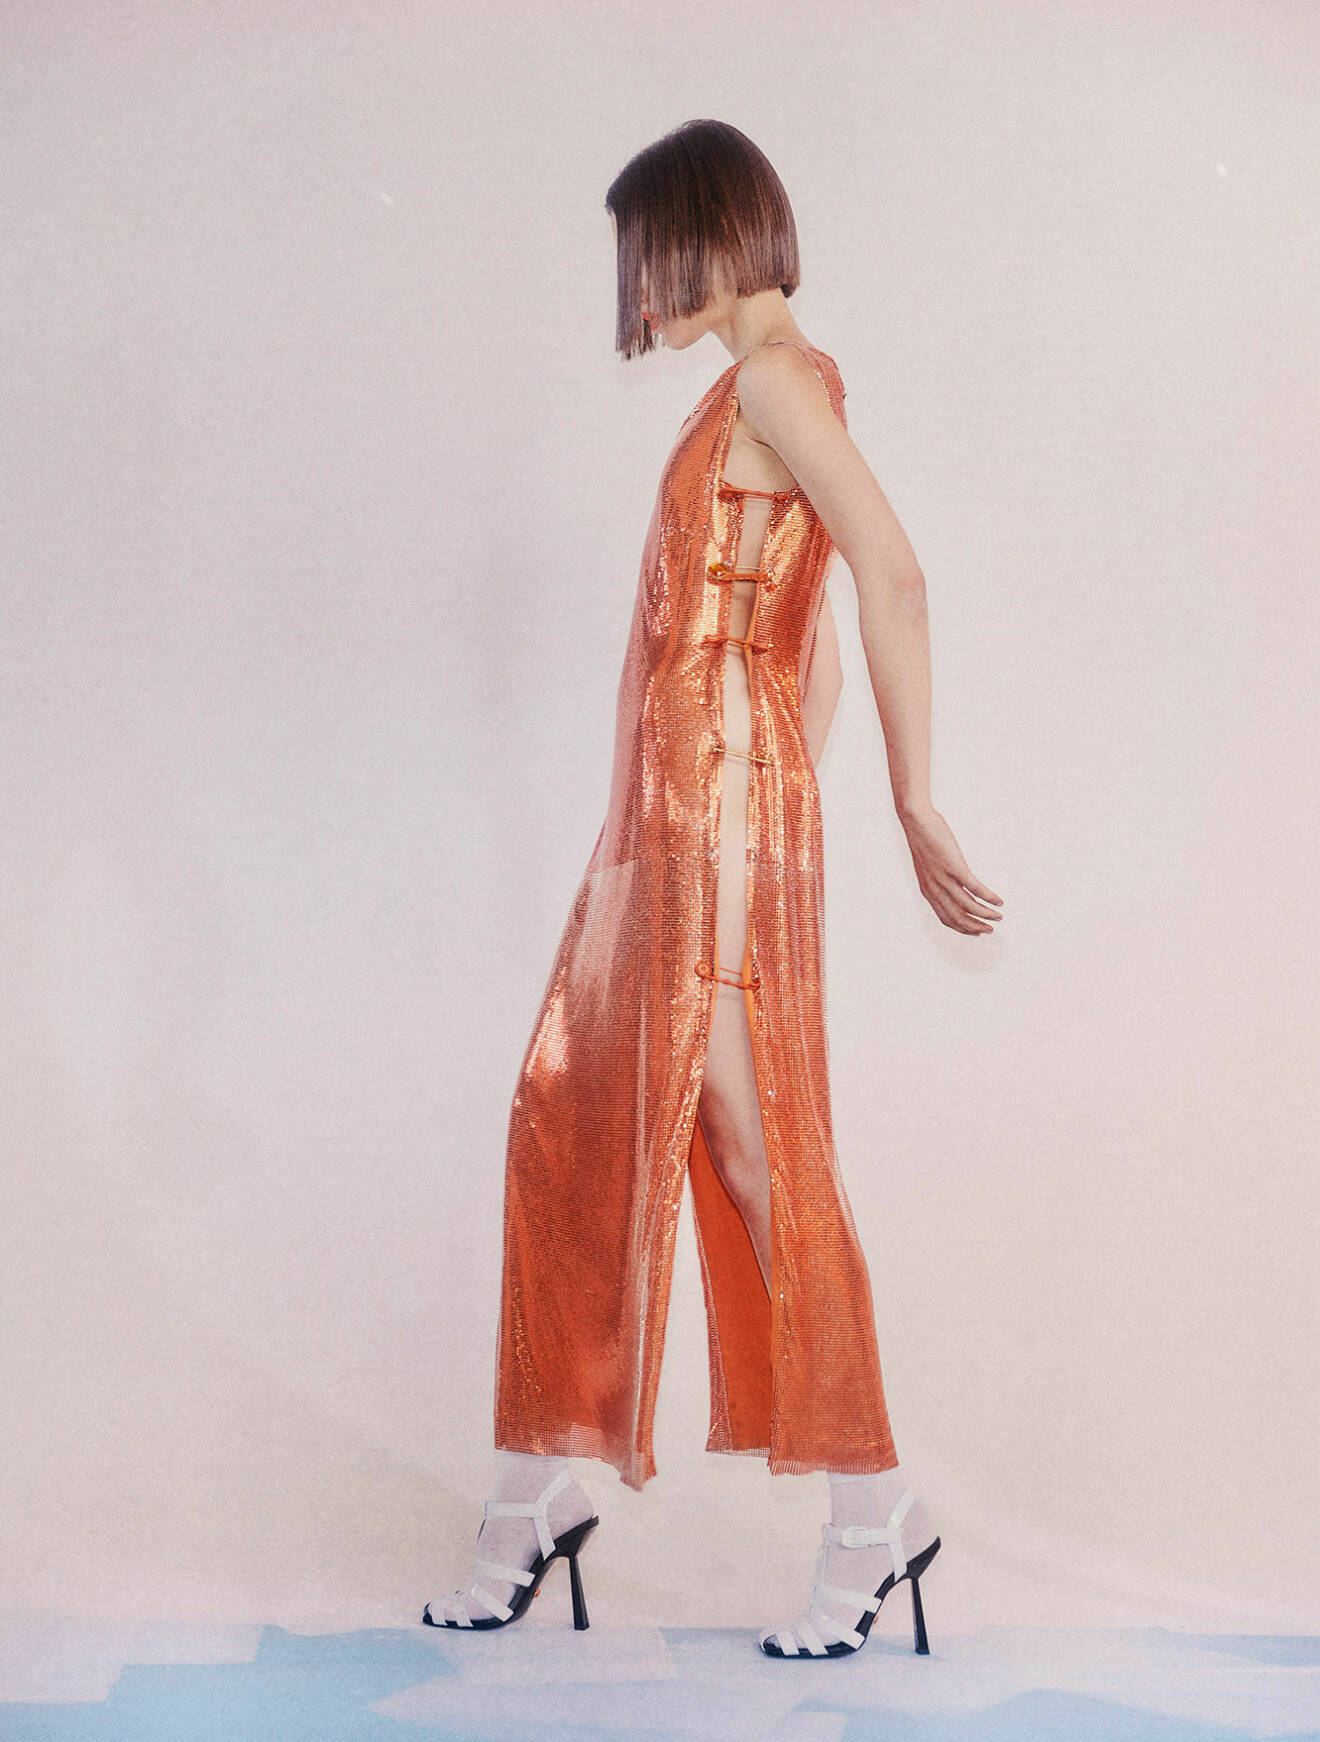 Fotomodellen har på sig en lång skimrande klänning i orange med cut out-detaljer